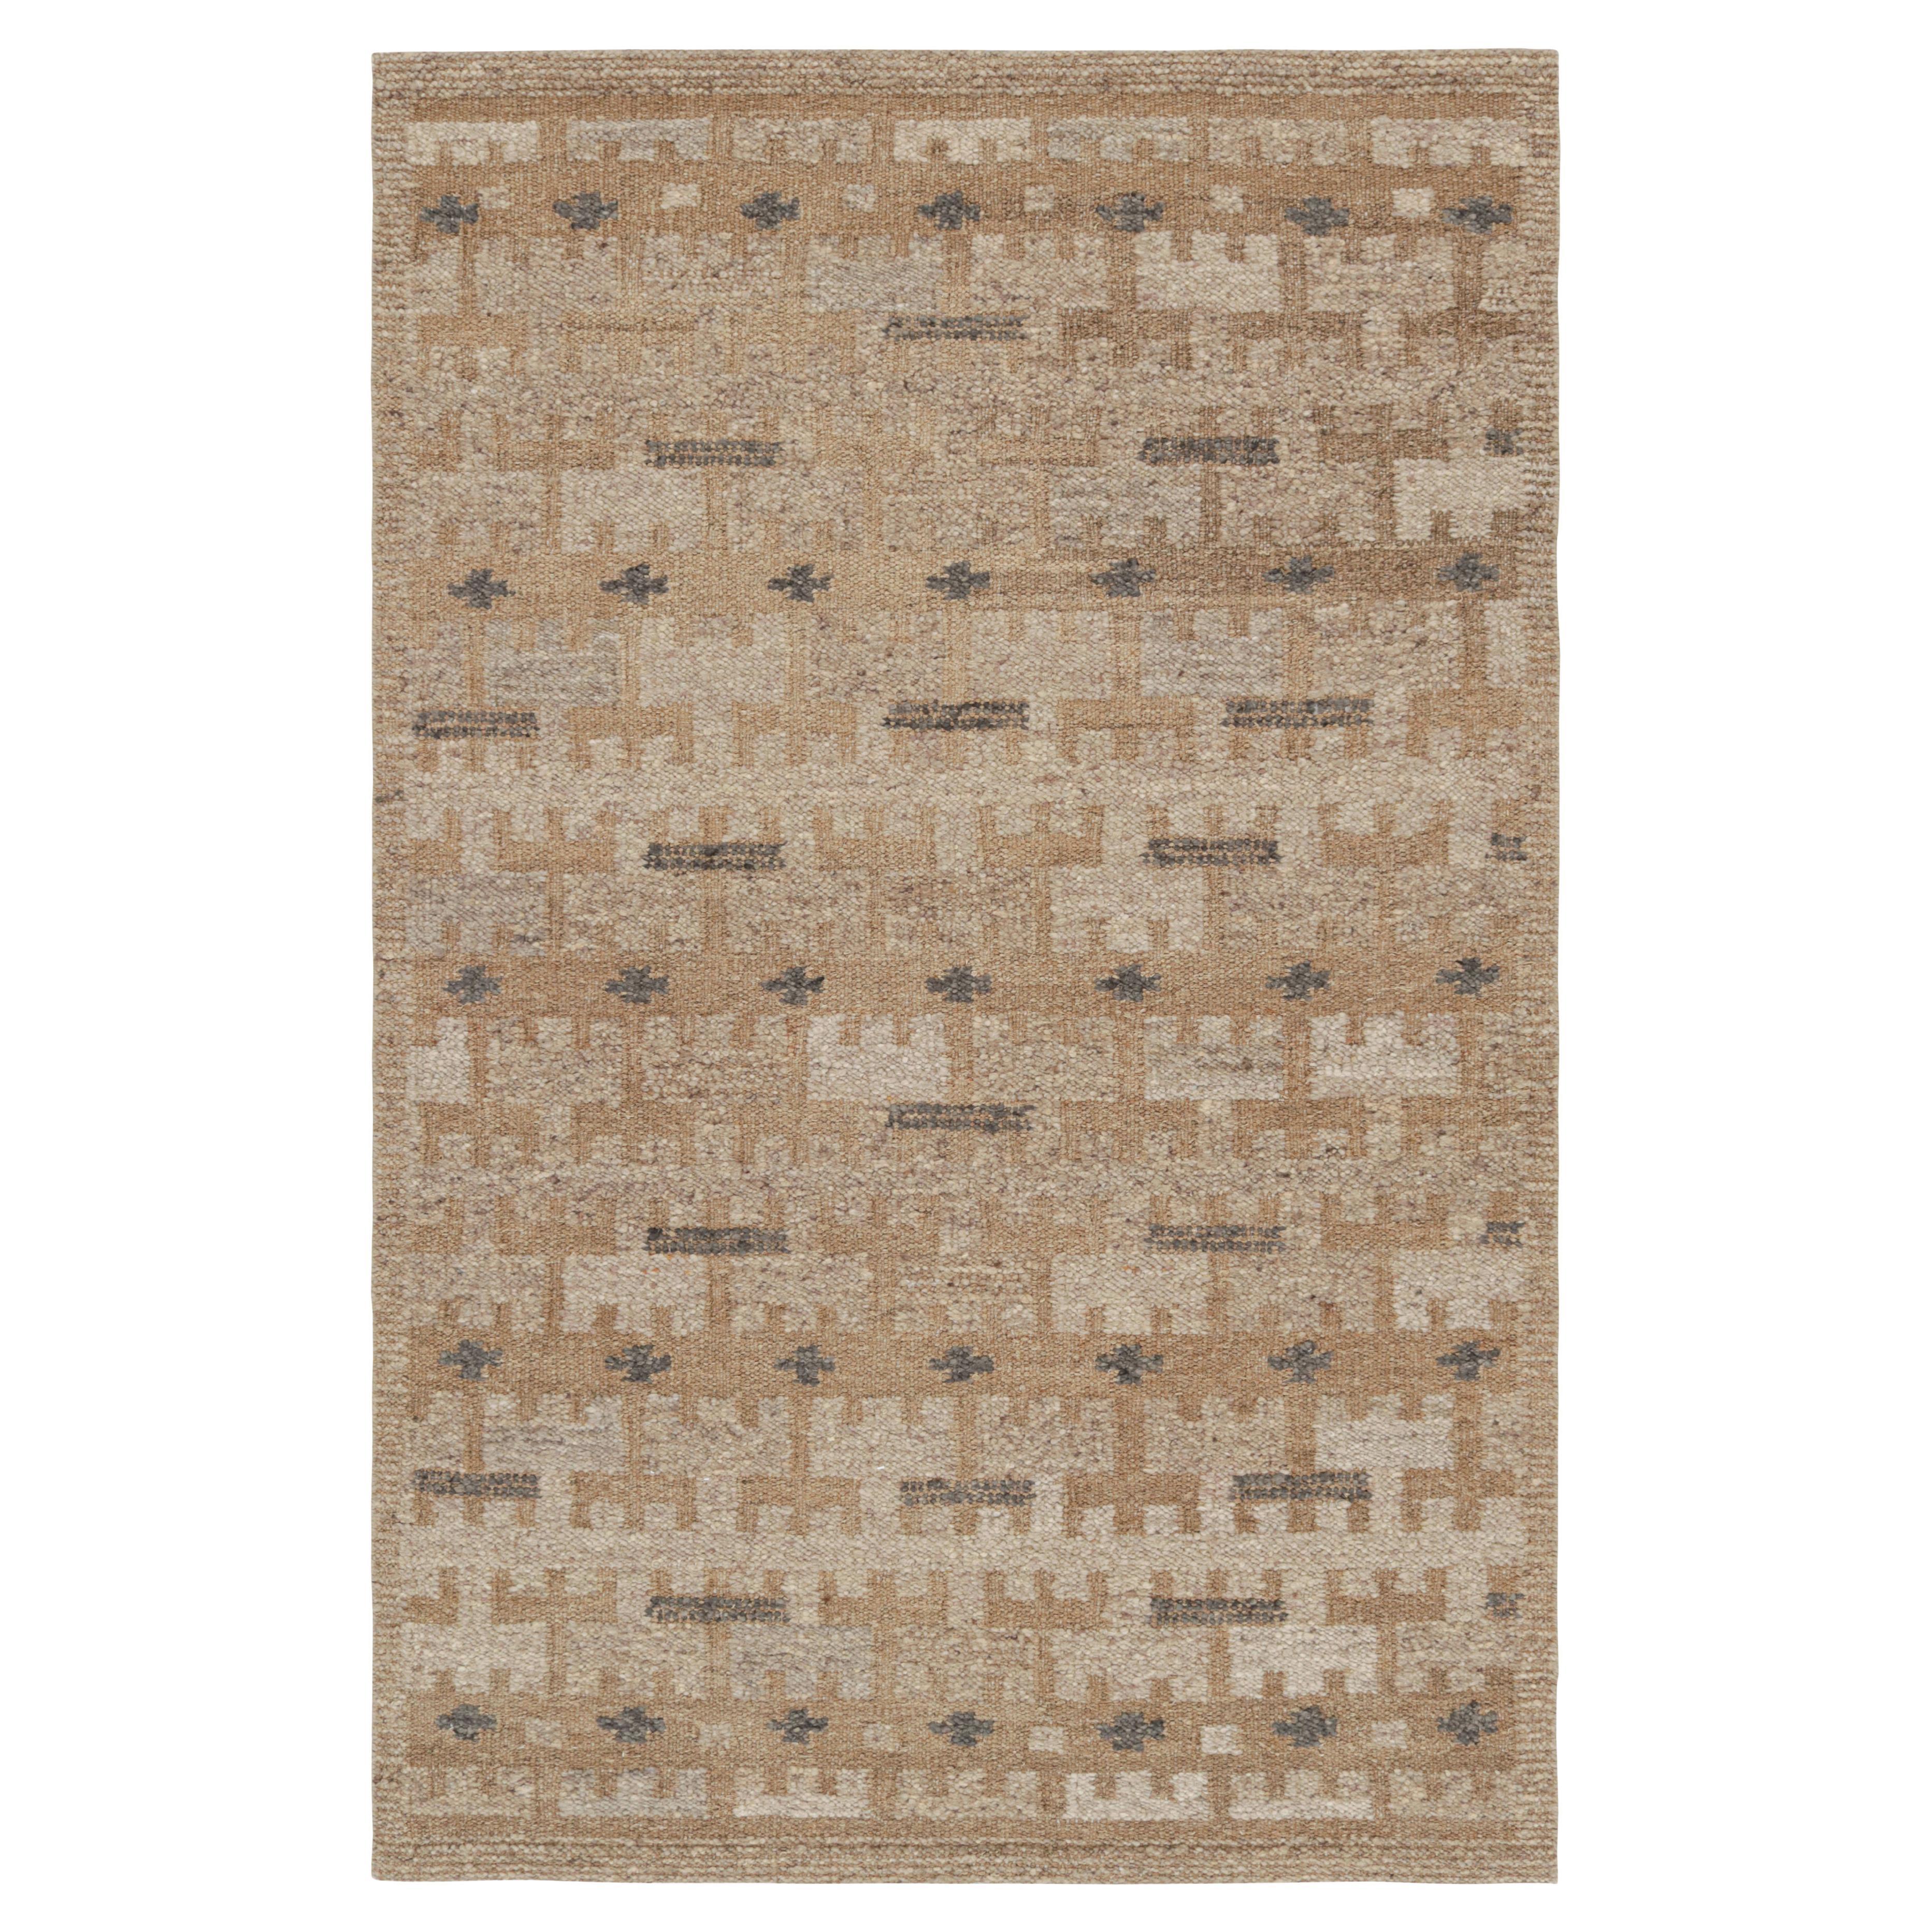 Rug & Kilim's Teppich im skandinavischen Stil in Beige-Braun mit geometrischen Mustern